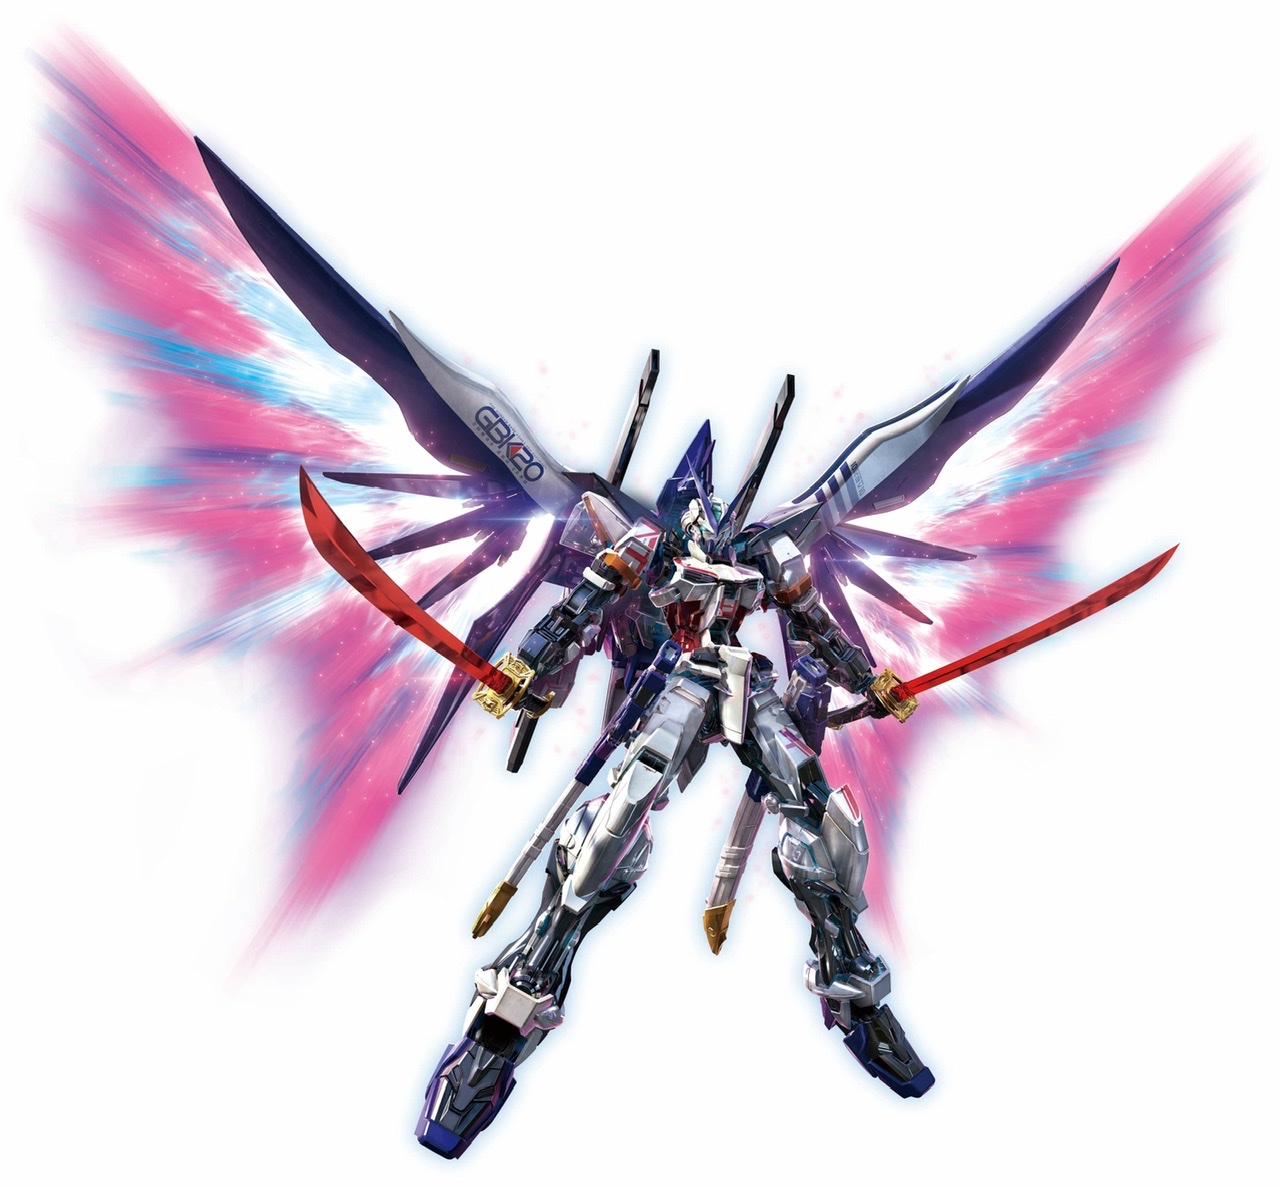 MG GBK-20 Gundam Astray (The Gundam Base Korea 20th Anniversary Memorial  Ver.), Gunpla Wiki